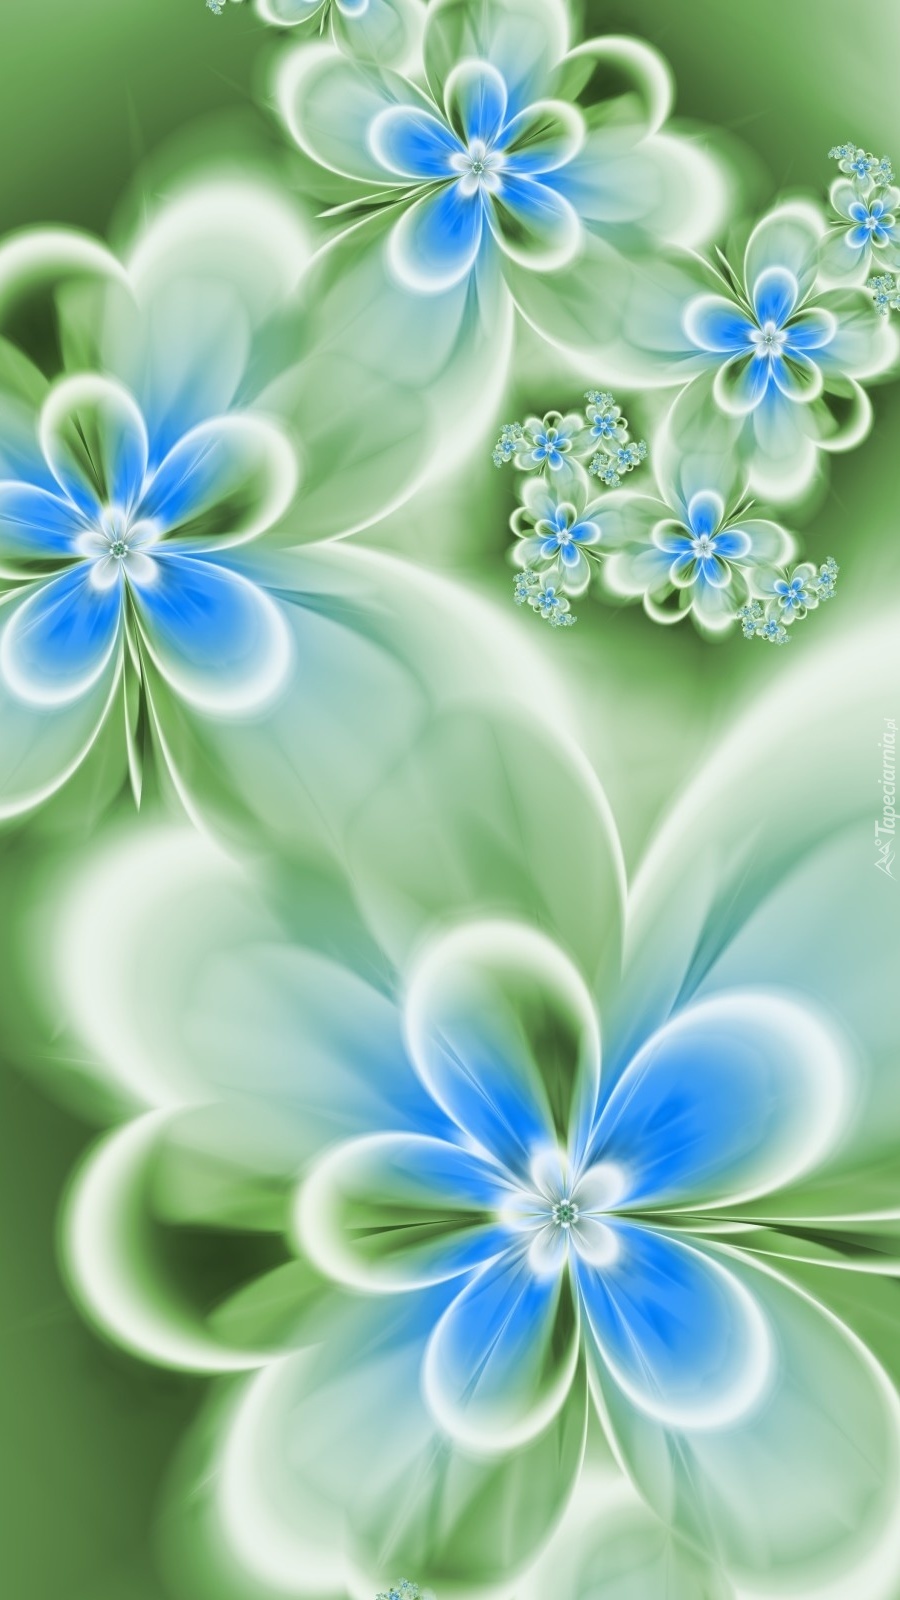 Delikatne bladoniebieskie kwiatuszki